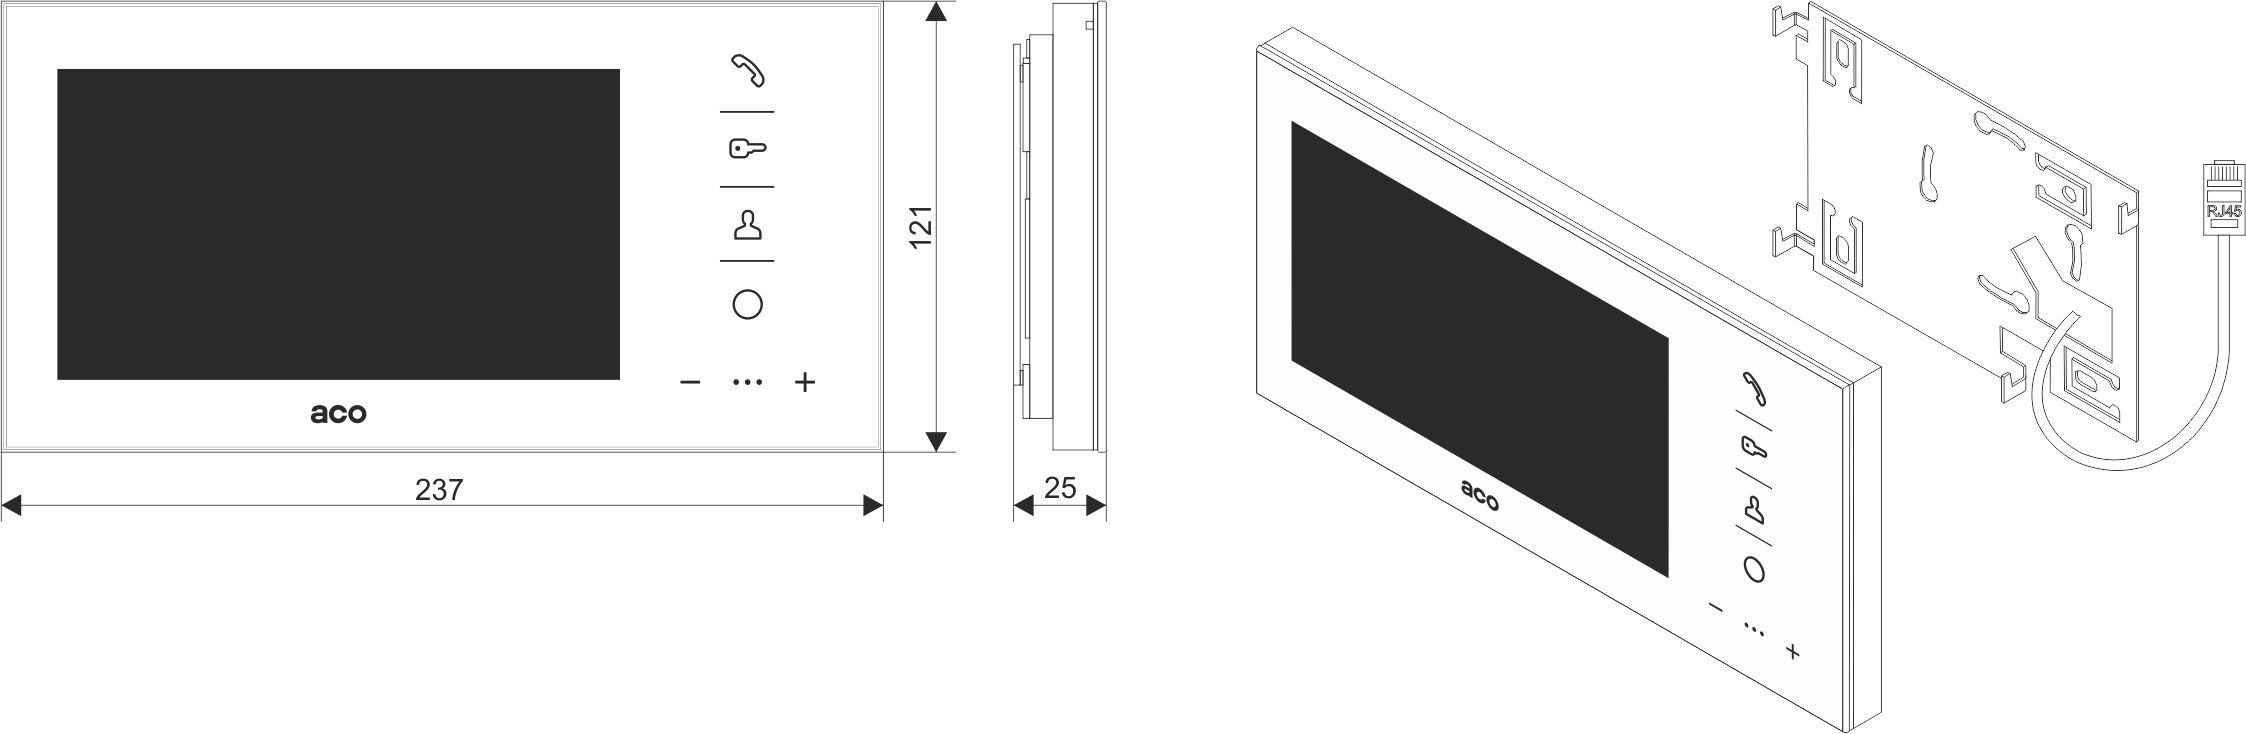 GLASS-PRO-7 WH Wideomonitor cyfrowy, głośnomówiący ze szklanym frontem i kolorowym wyświetlaczem 7” - Wymiary